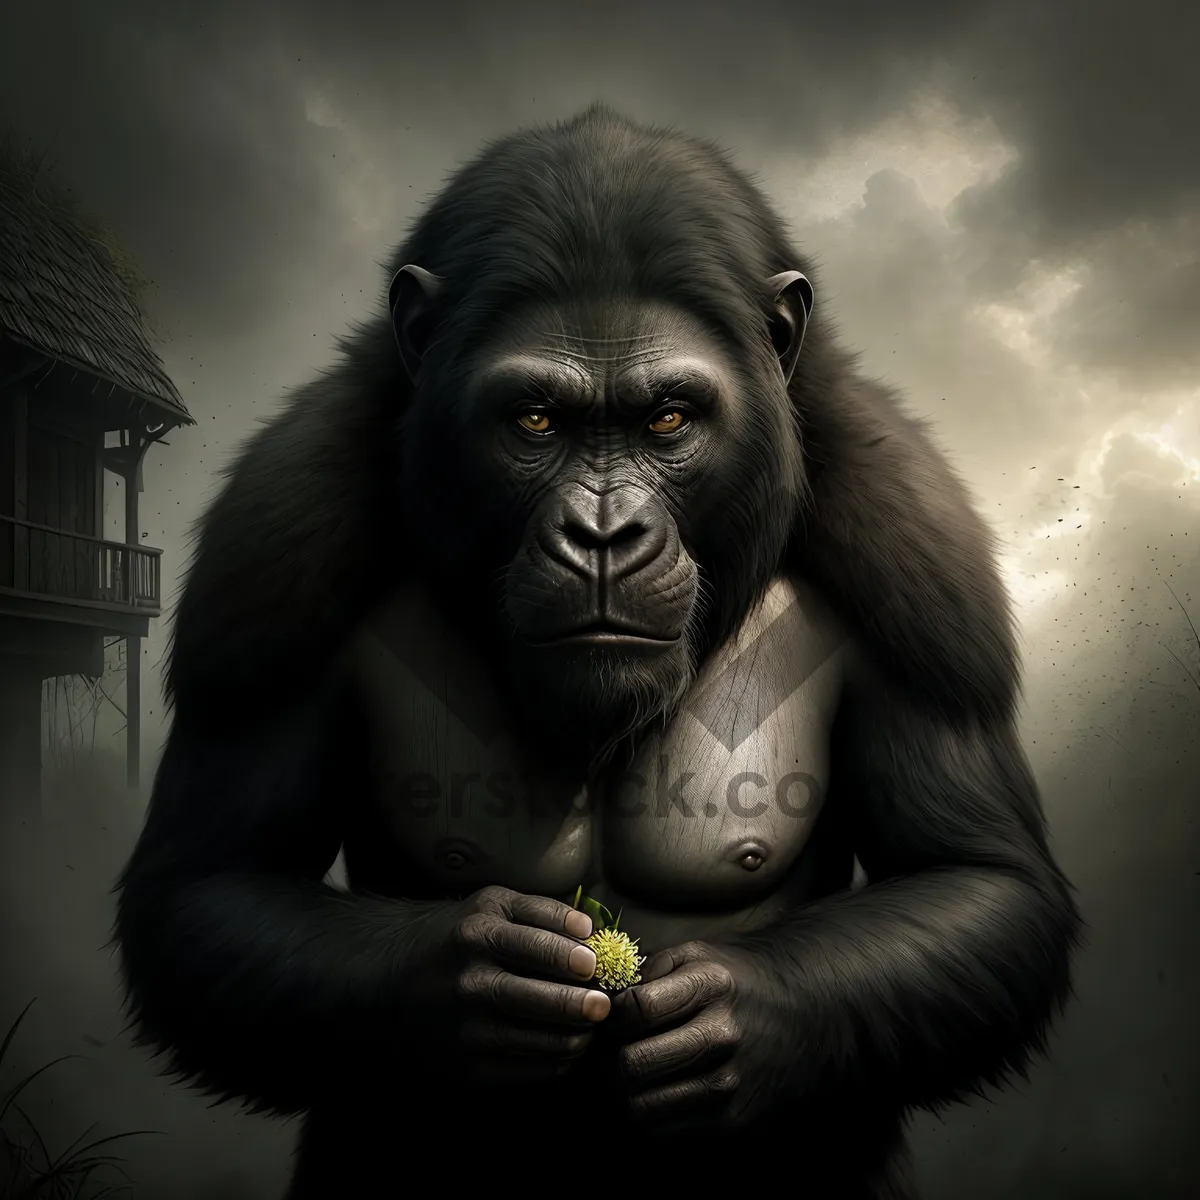 Picture of Orangutan Ape: Majestic Primate in the Wild